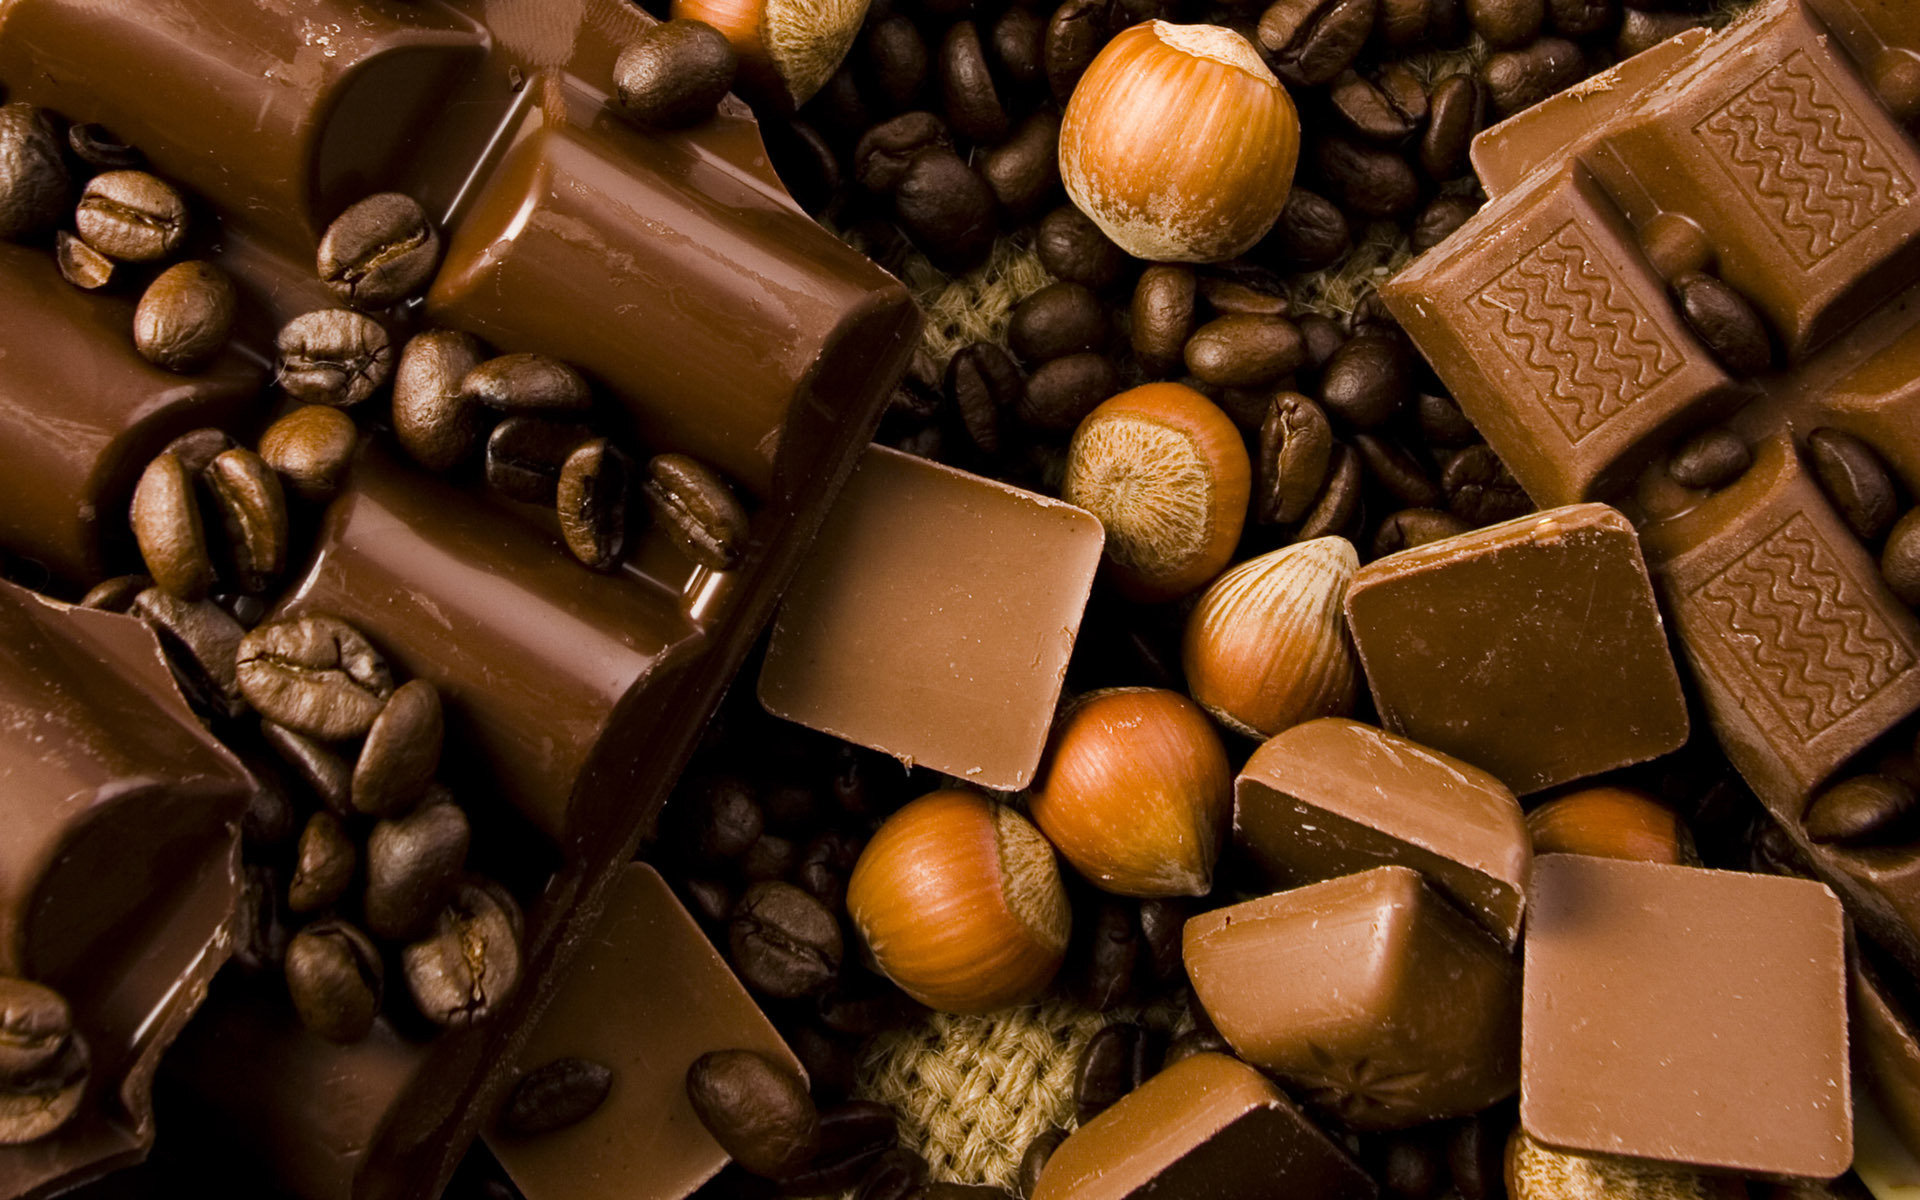 Chocolate Socola trái tim hộp 16 viên quà tặng online